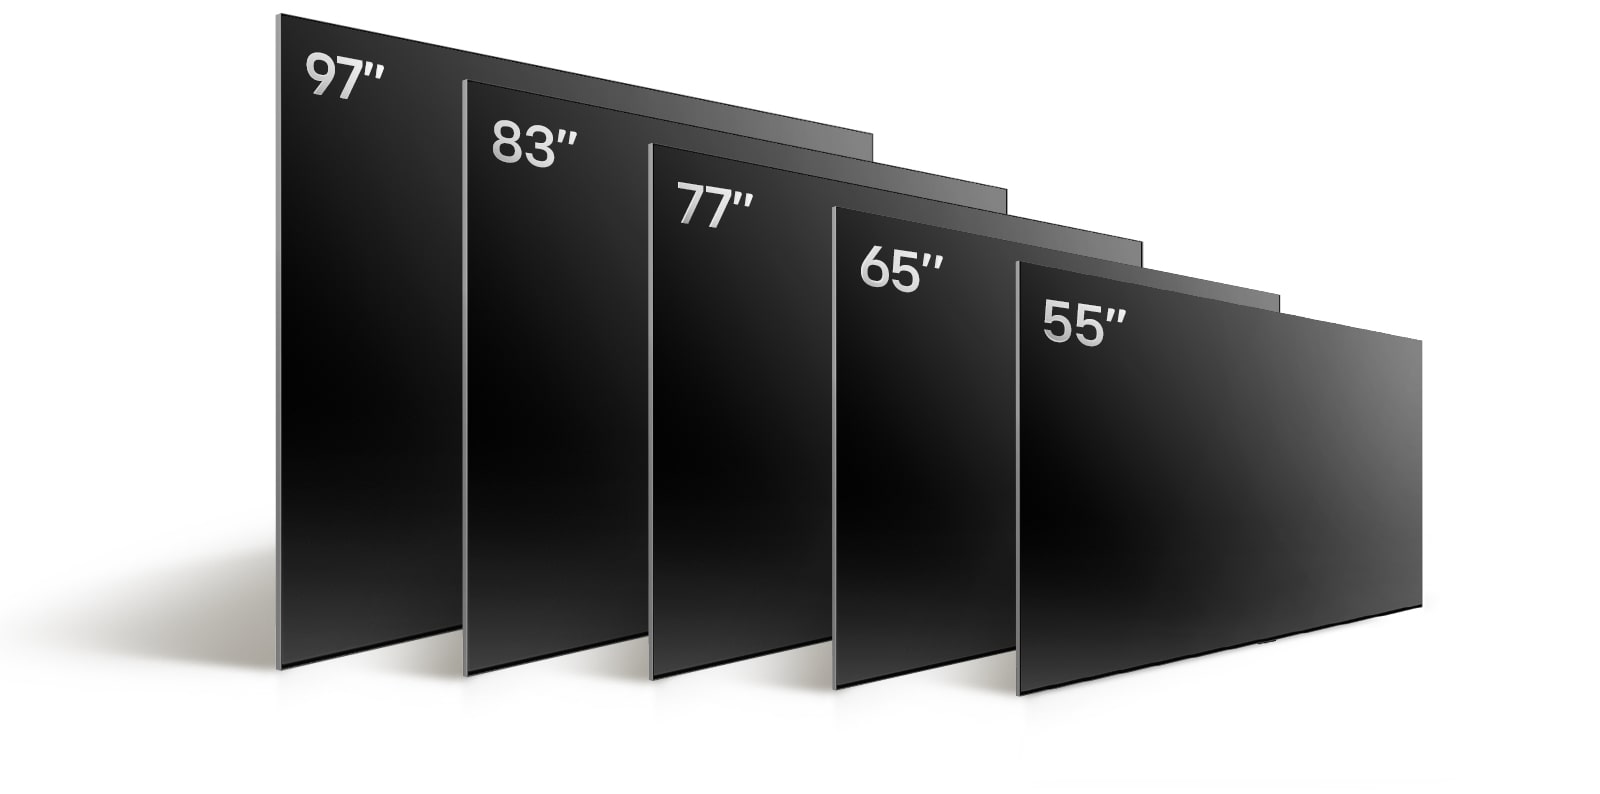 Primerjava različnih velikosti televizorjev LG OLED, OLED G4, z OLED G4 55 palcev, OLED G4 65 palcev, OLED G4 77 palcev, OLED G4 83 palcev in OLED G4 97 palcev.